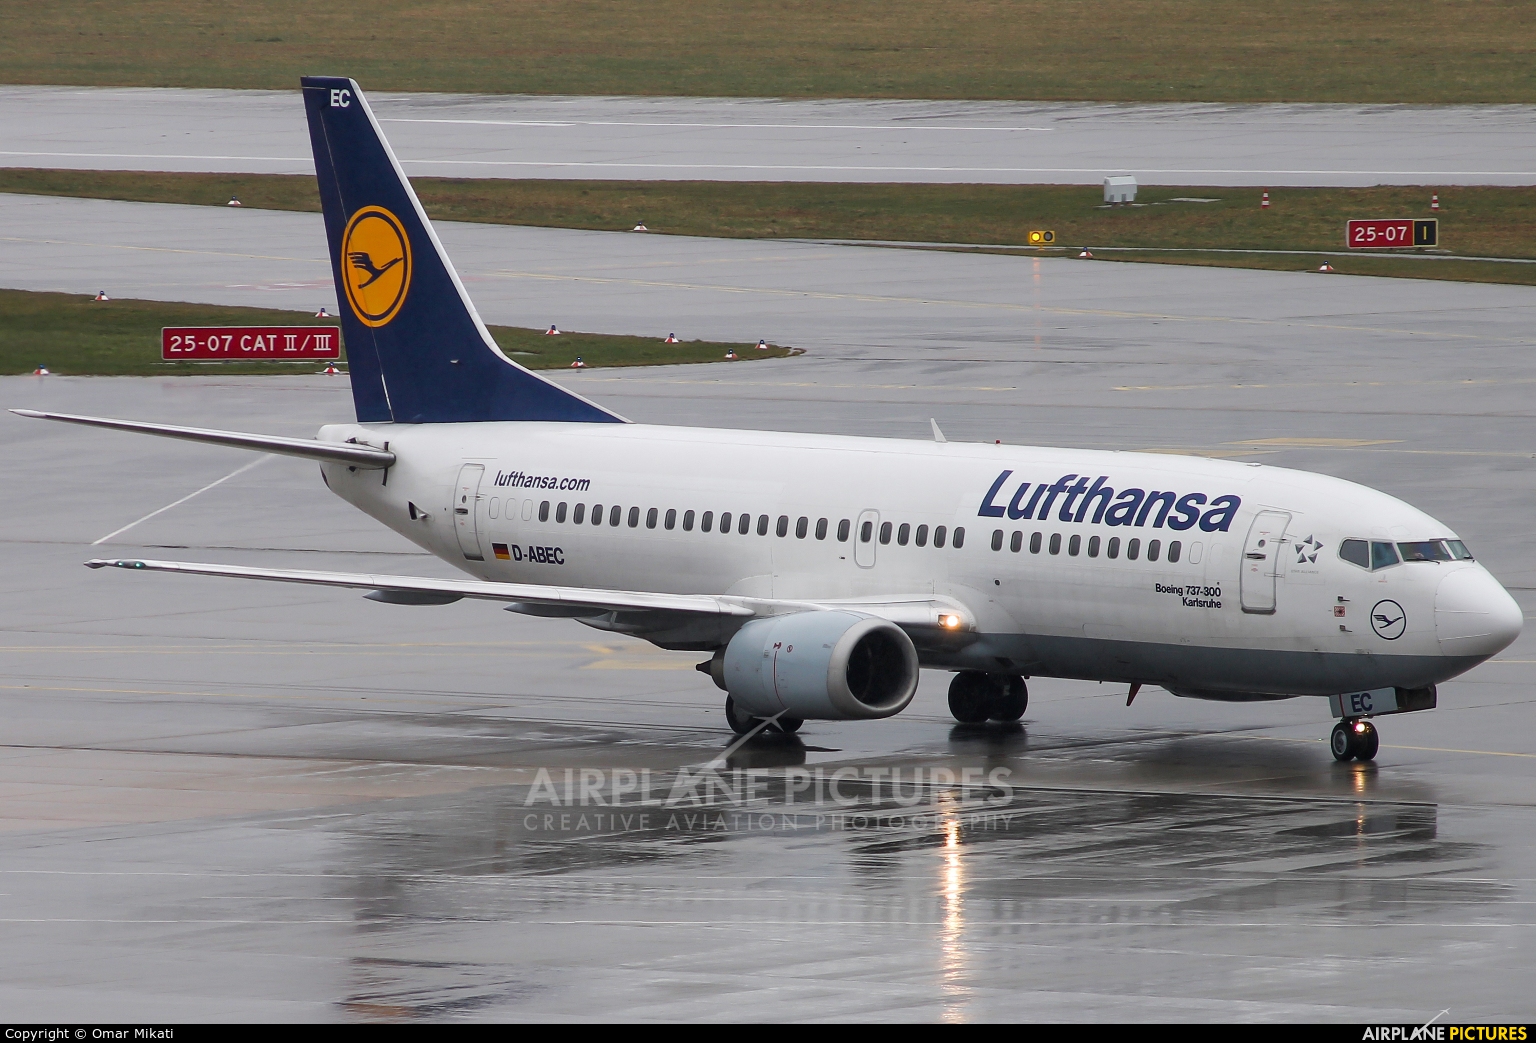 Lufthansa D-ABEC aircraft at Stuttgart